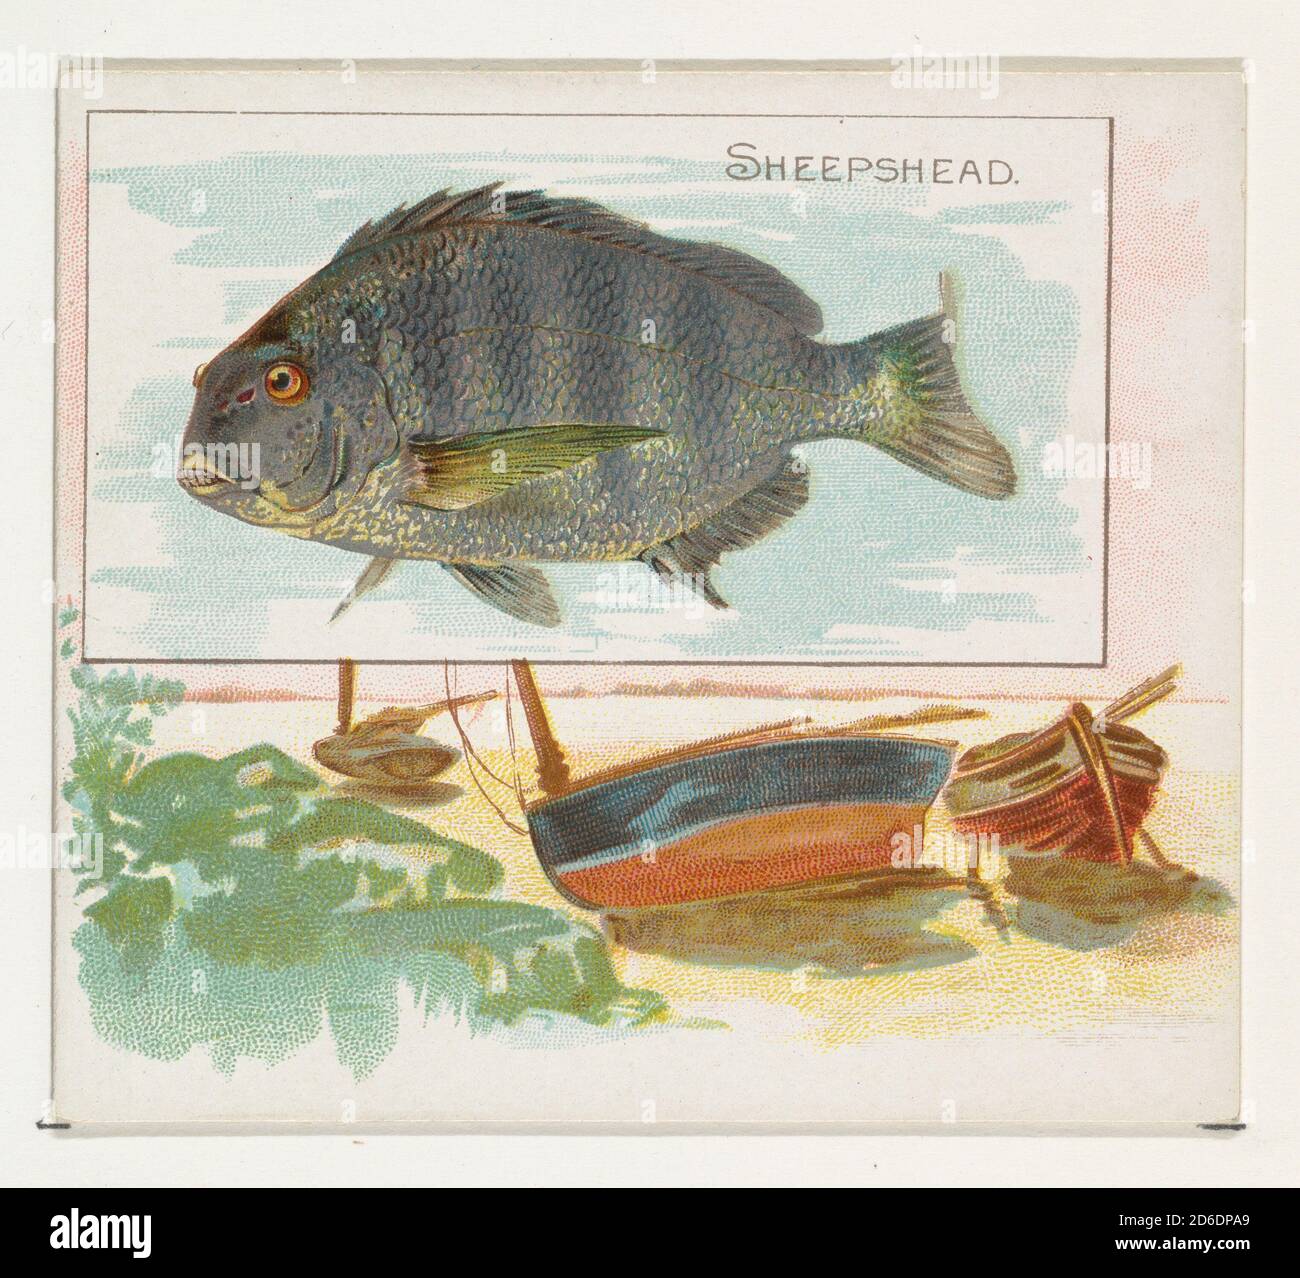 Sheepshead, de la série Fish from American Waters (N39) pour Allen & amp; Ginter cigarettes, 1889. Banque D'Images